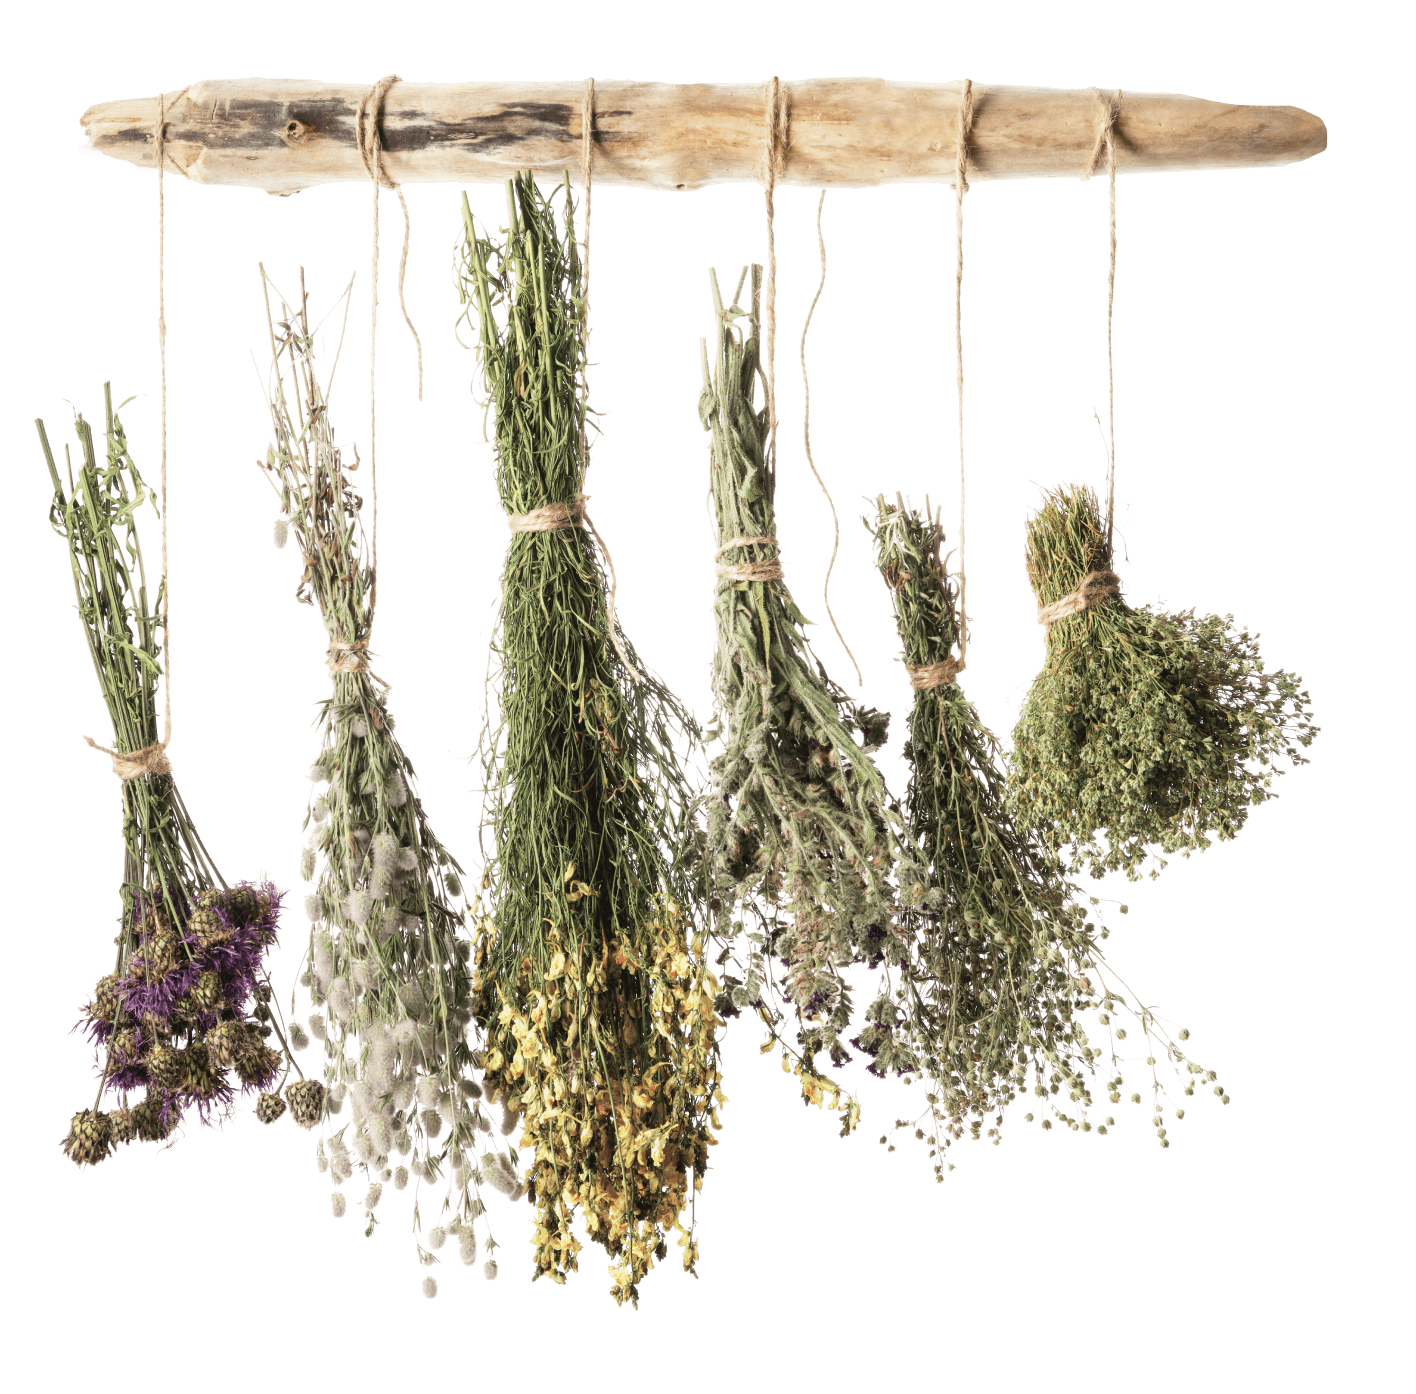 Illustration herbs